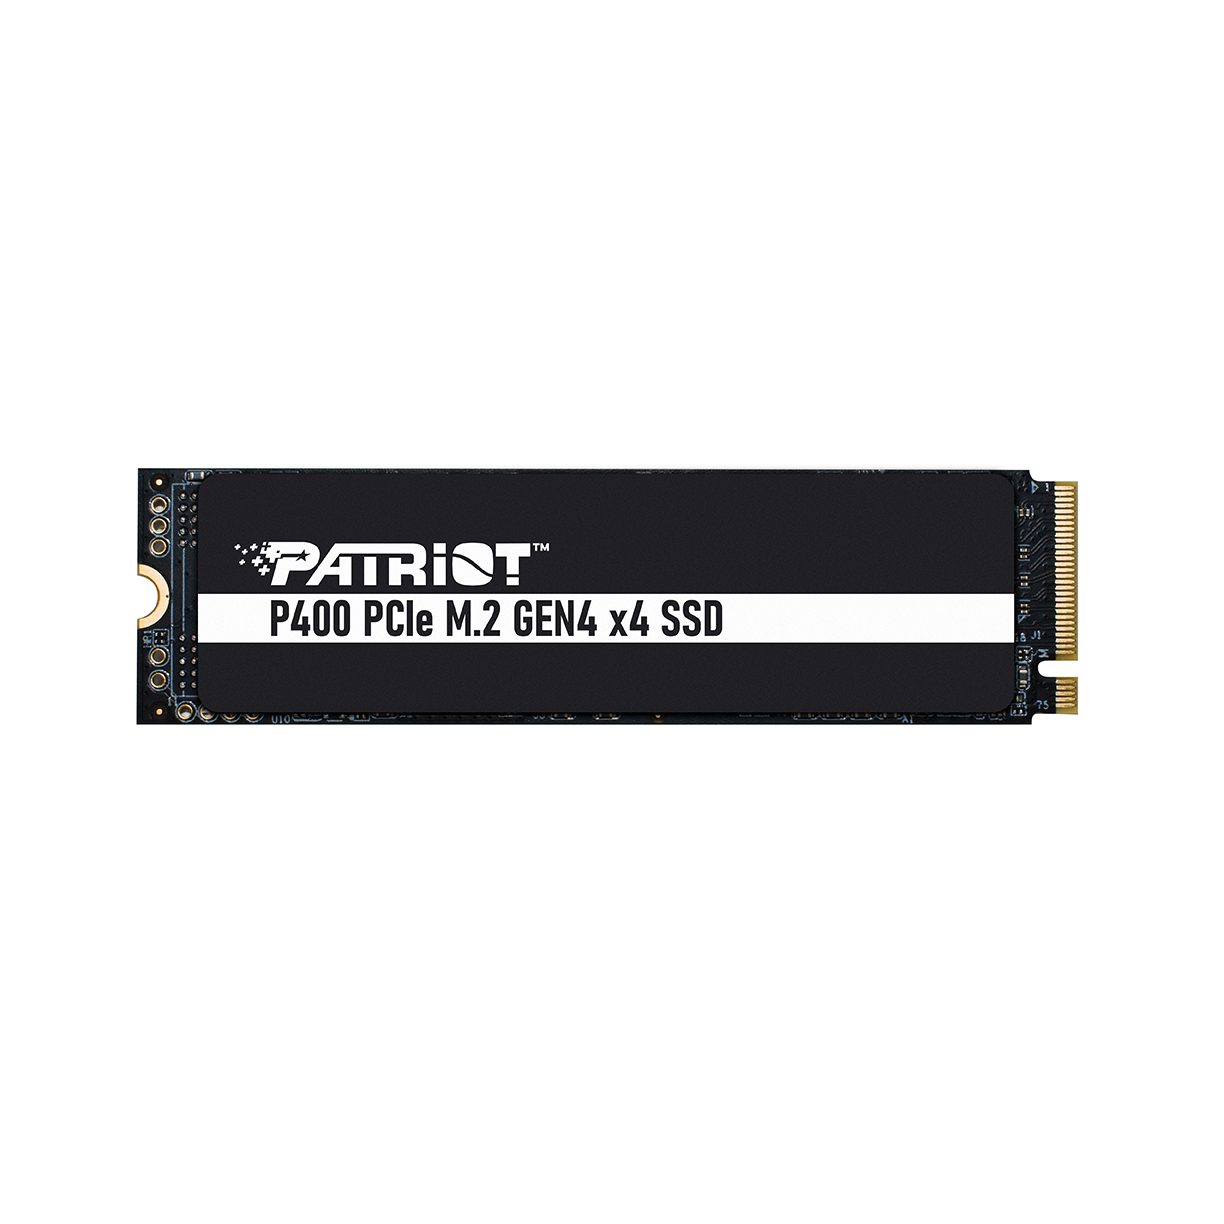 SSD M.2 PCIe Gen4 x4 - P400